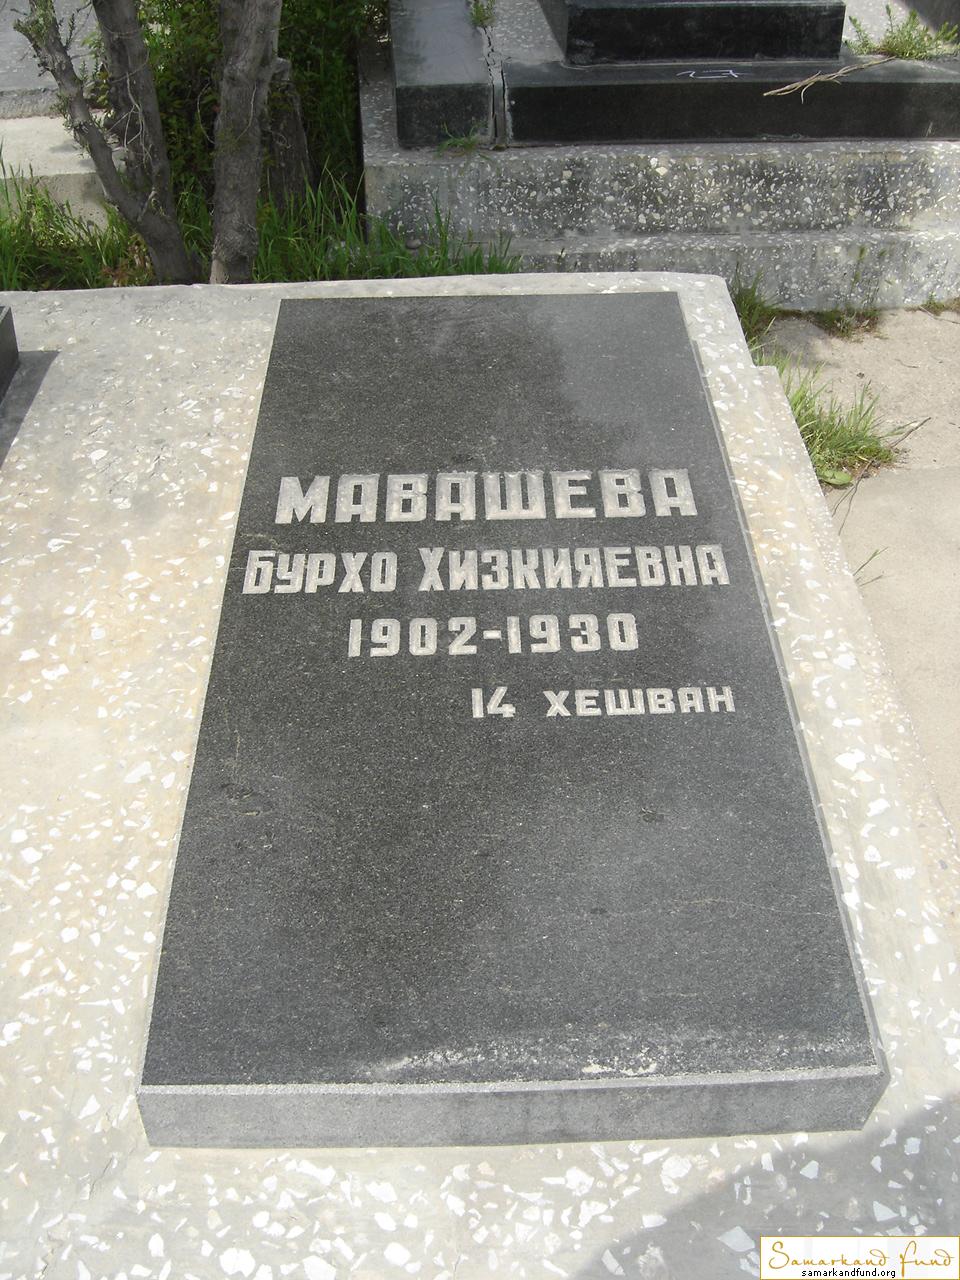 Мавашева Бурхо Хизкияевна   1902 - 1930 зах. 10.18 №27.JPG